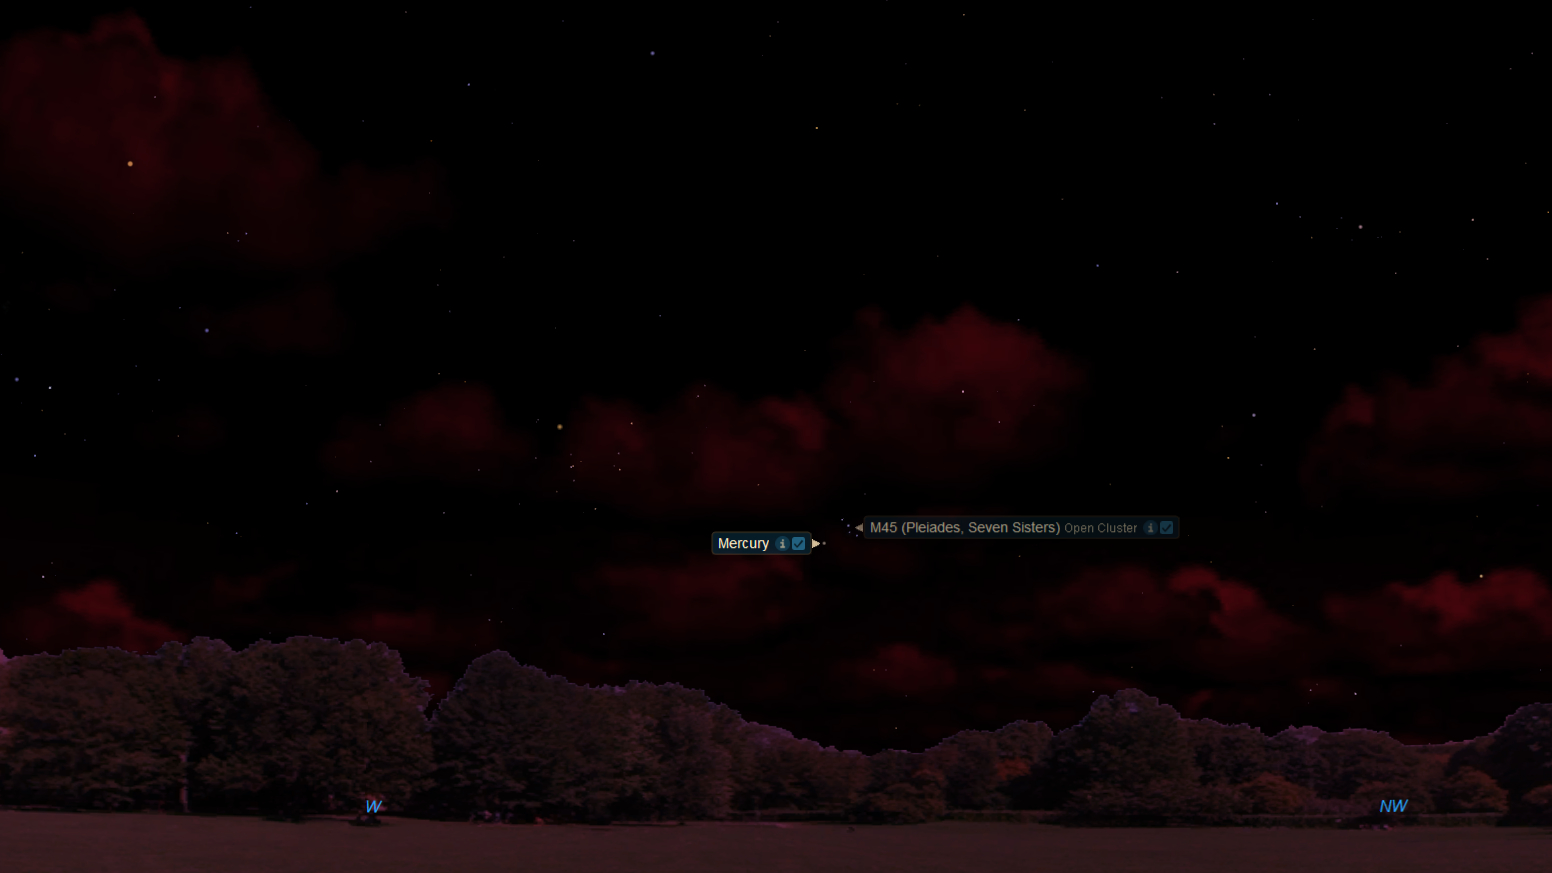 L'amas d'étoiles des Pléiades rejoindra Mercure dans le ciel nocturne le 29 avril. Ce graphique de Starry Night montre la vue vers 20h30 heure locale en regardant vers l'ouest.